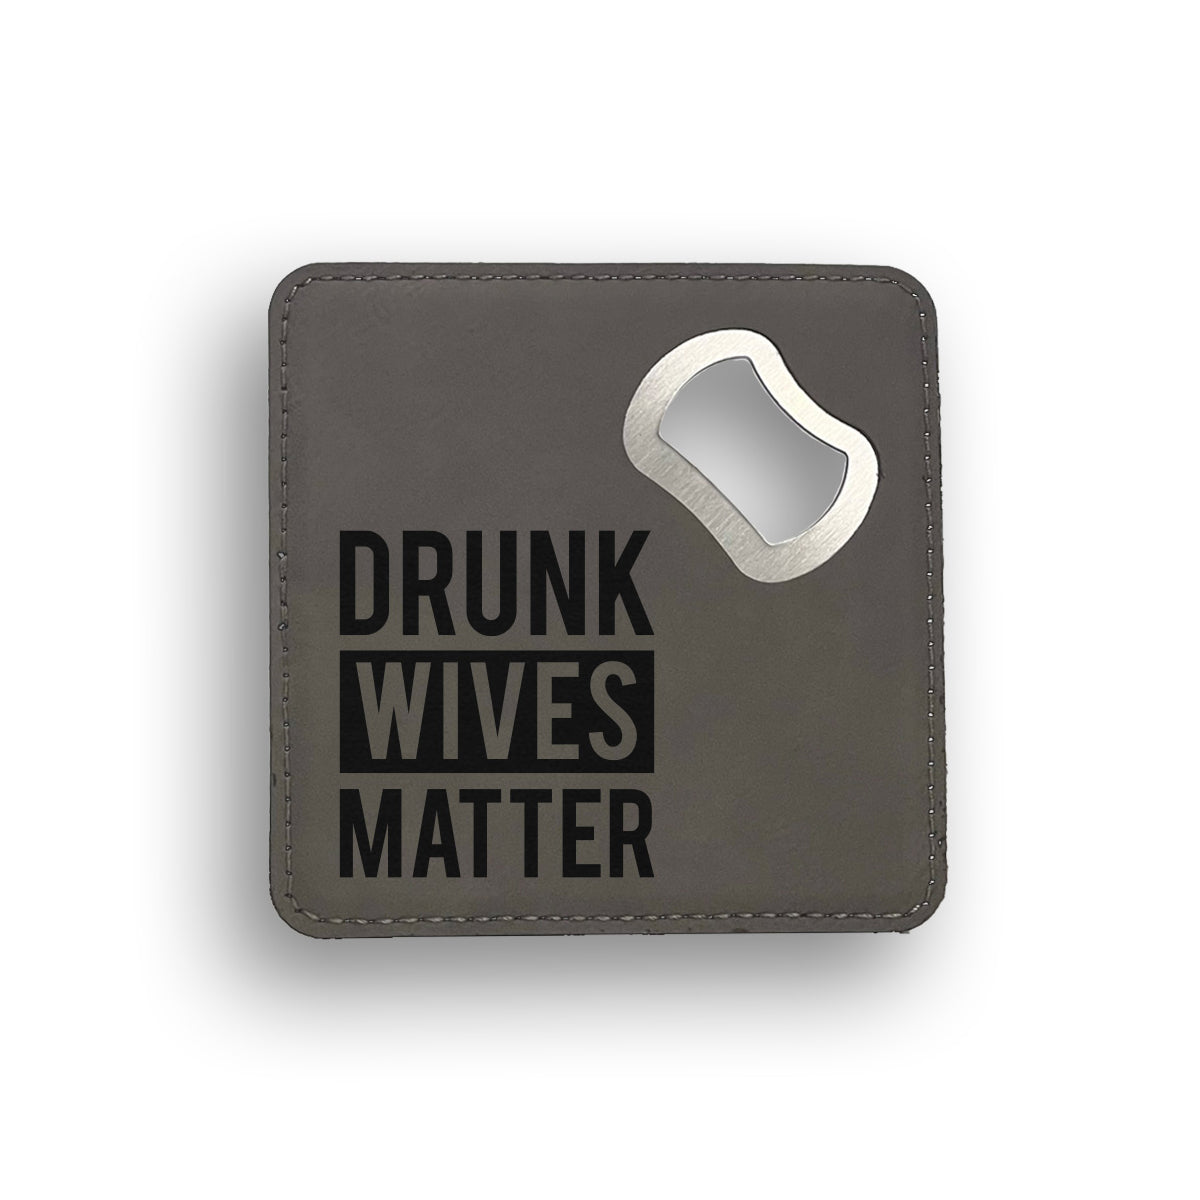 Drunk Wives Bottle Opener Coaster